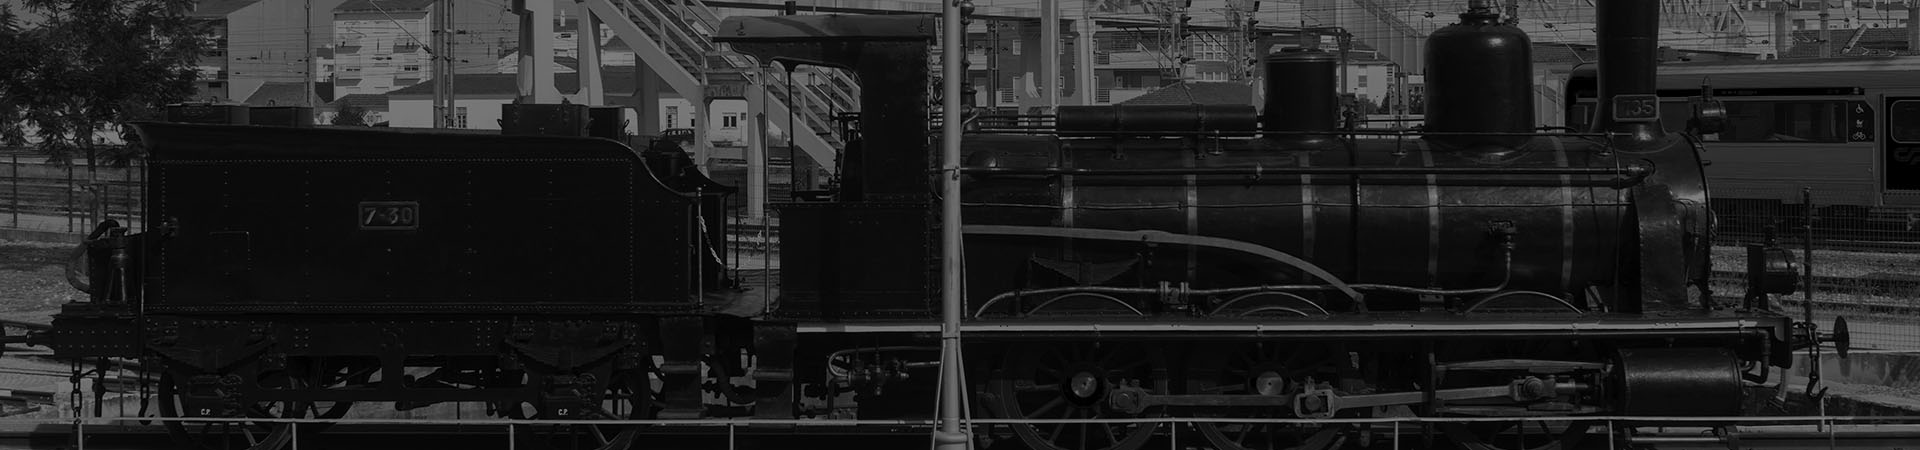 Fotografía de una locomotora de vapor con ténder CP 855 en la plataforma giratoria